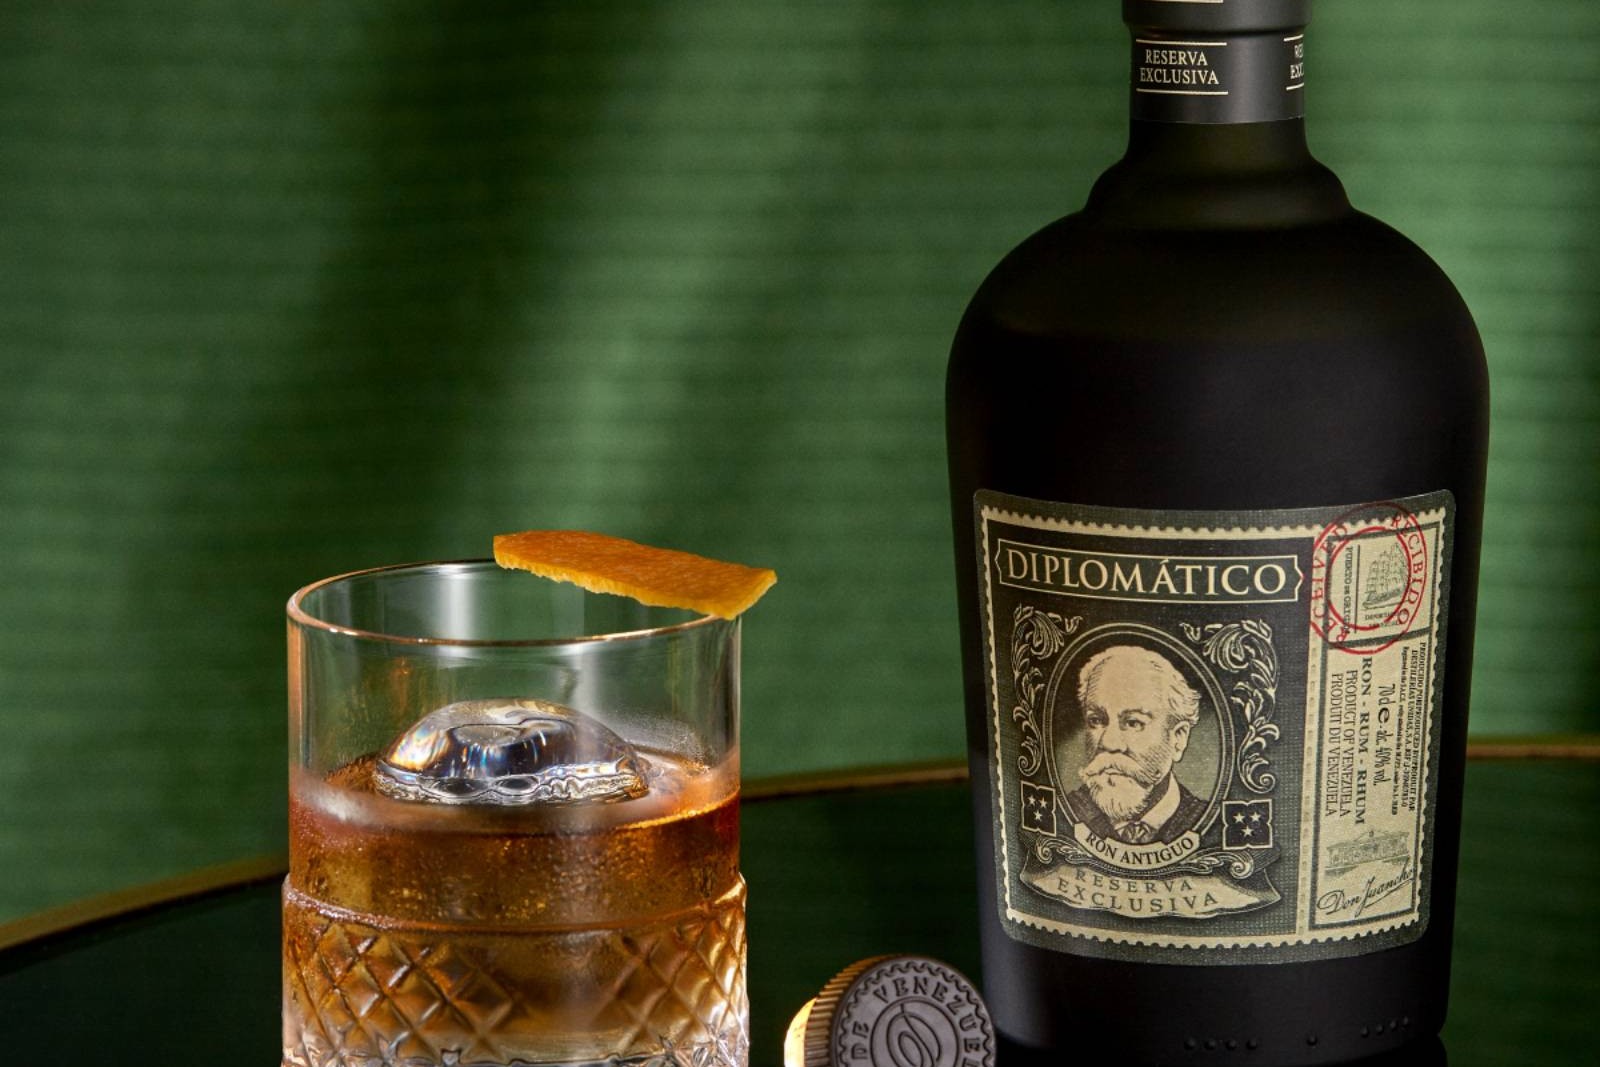 Diplomático Reserva Exclusiva: The Pinnacle of Premium Rum